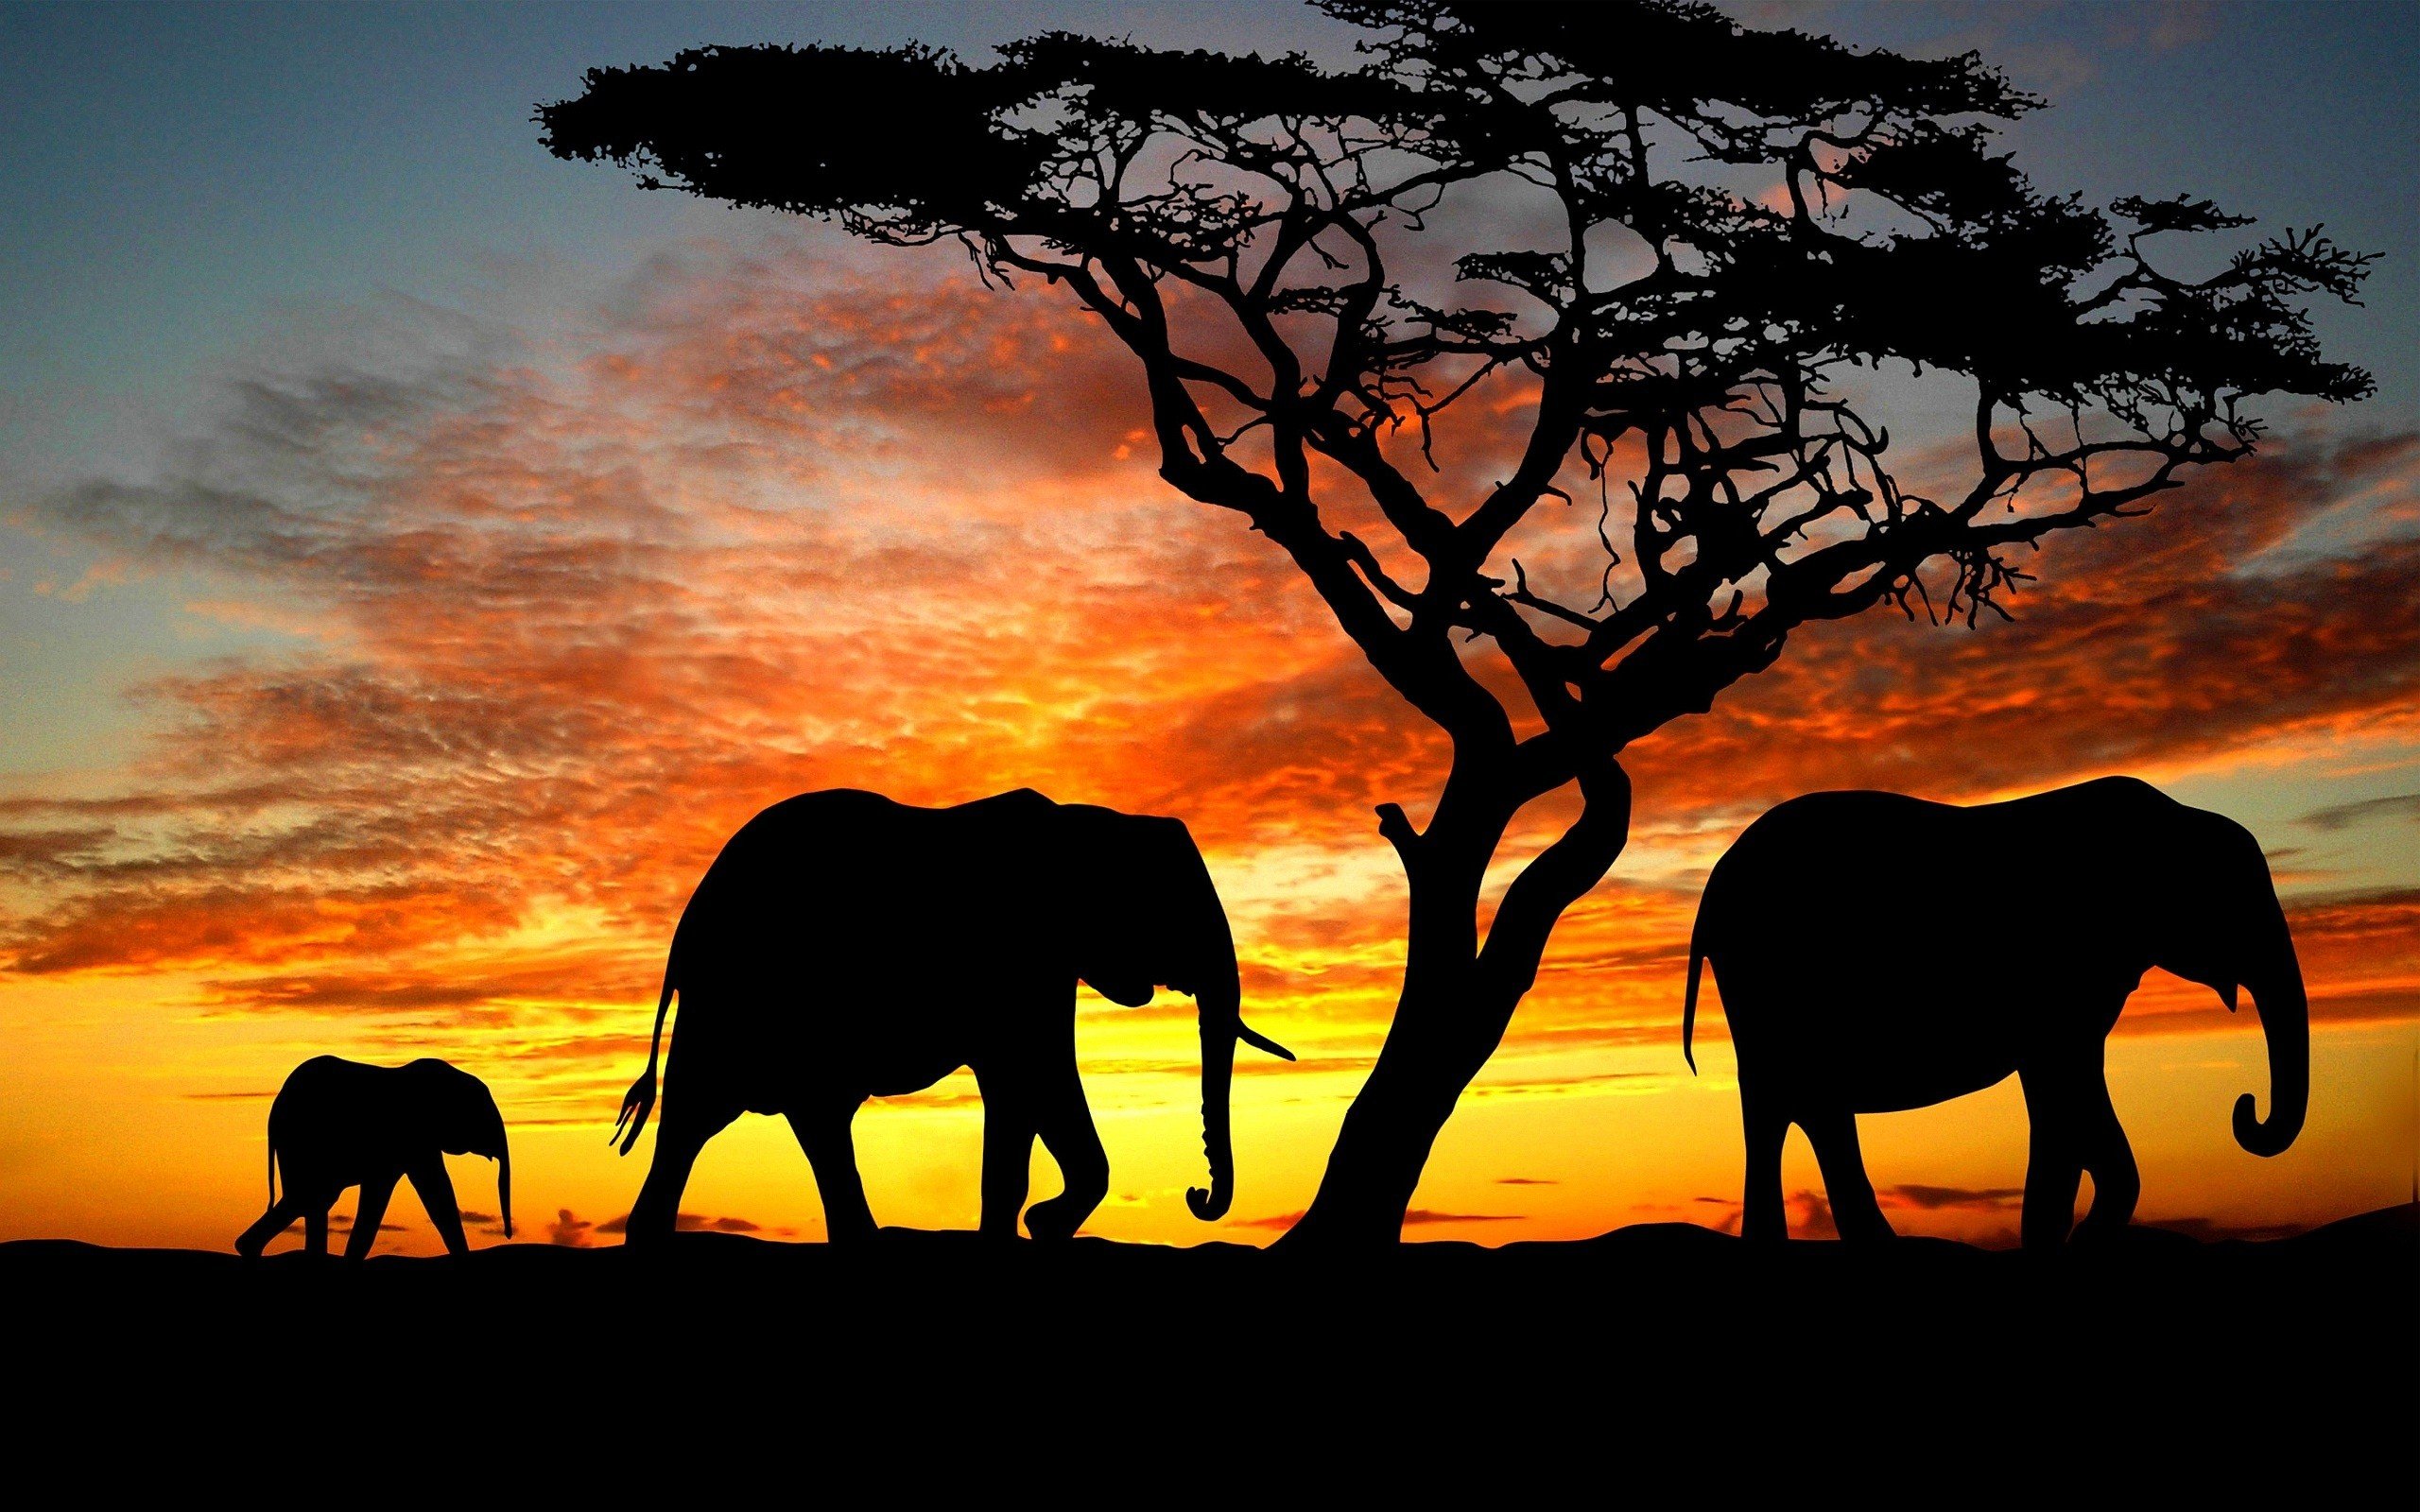 Африканский слон в саванне